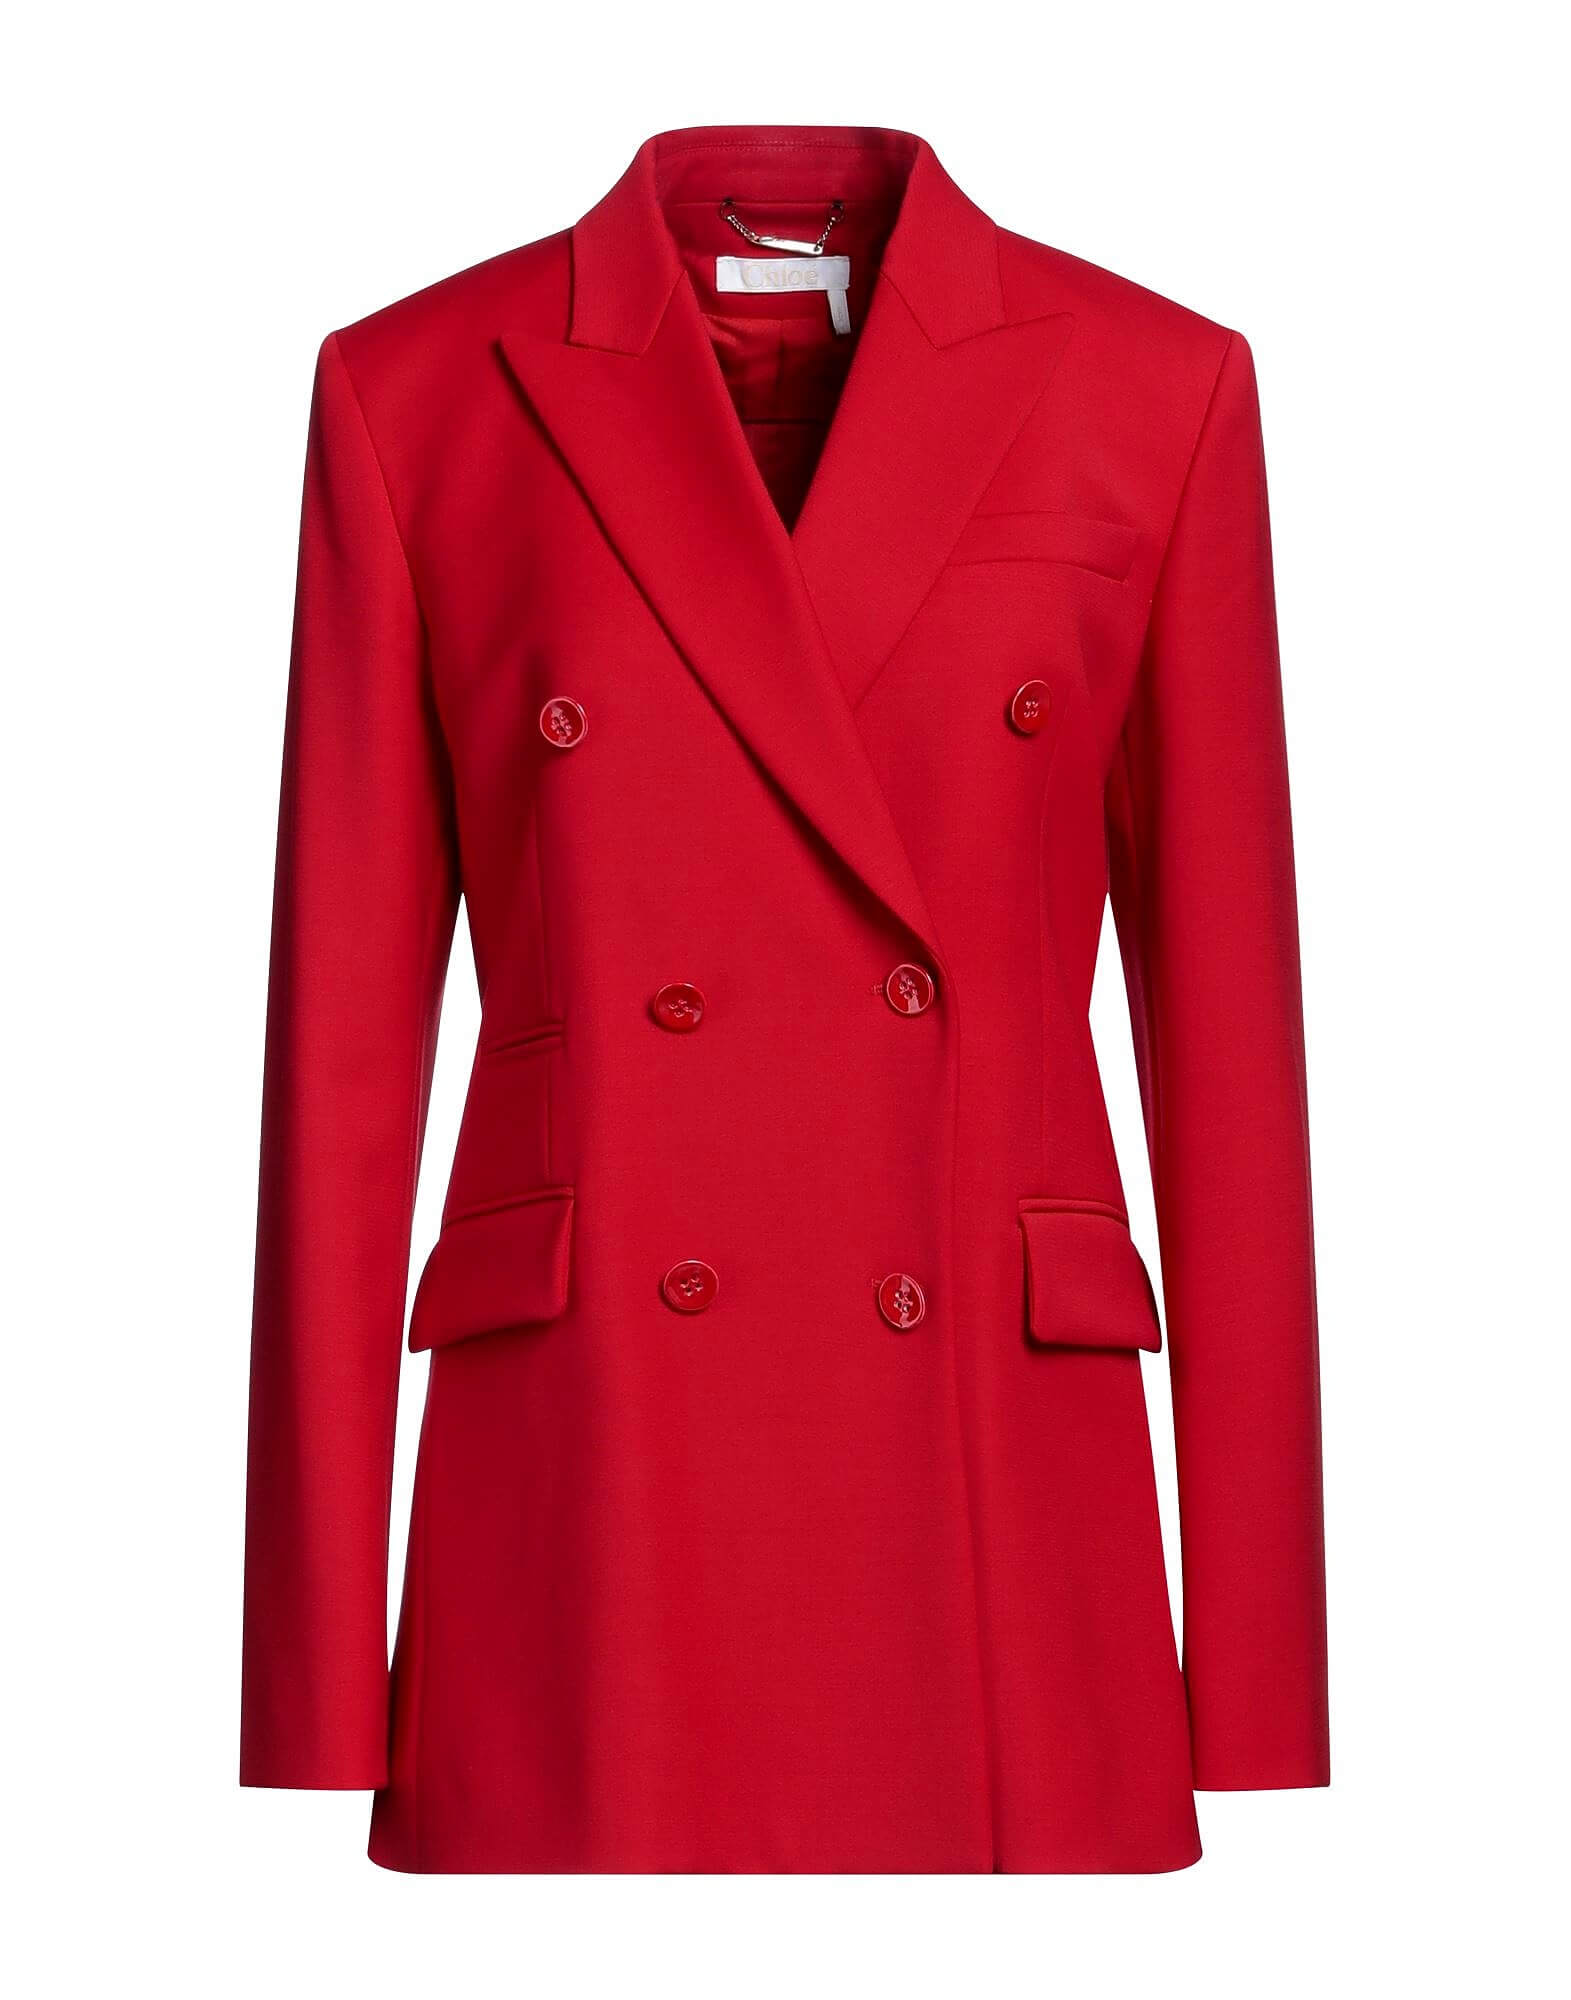 Блейзер Chloé, красный женский двубортный твидовый блейзер za винтажный пиджак с длинными рукавами и карманами верхняя одежда осень